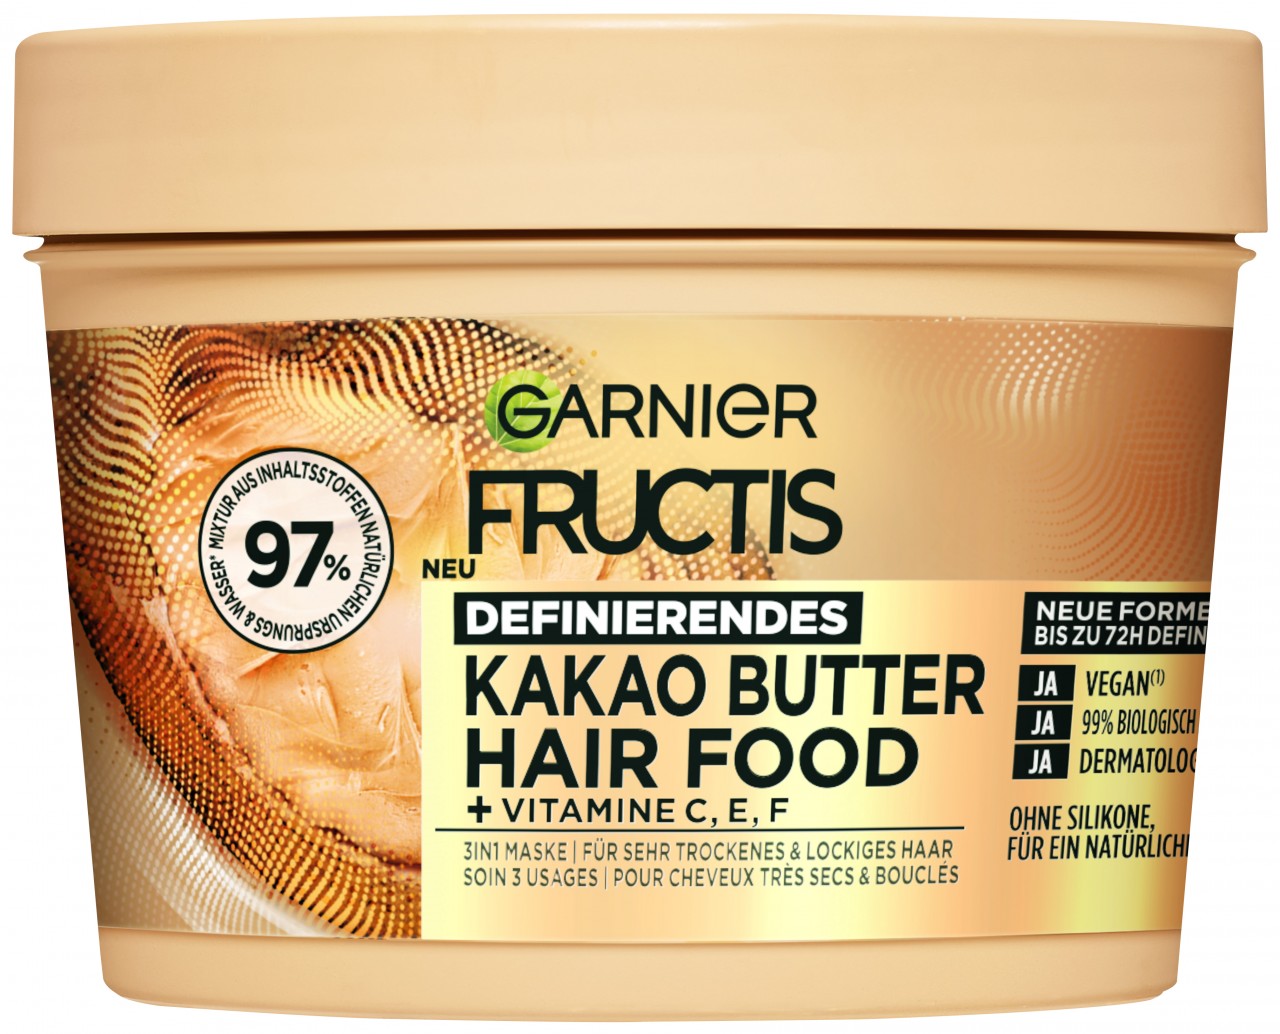 Fructis - Definierendes Kakao Butter Hair Food 3in1 Haarmaske für trockenes und lockiges Haar von GARNIER